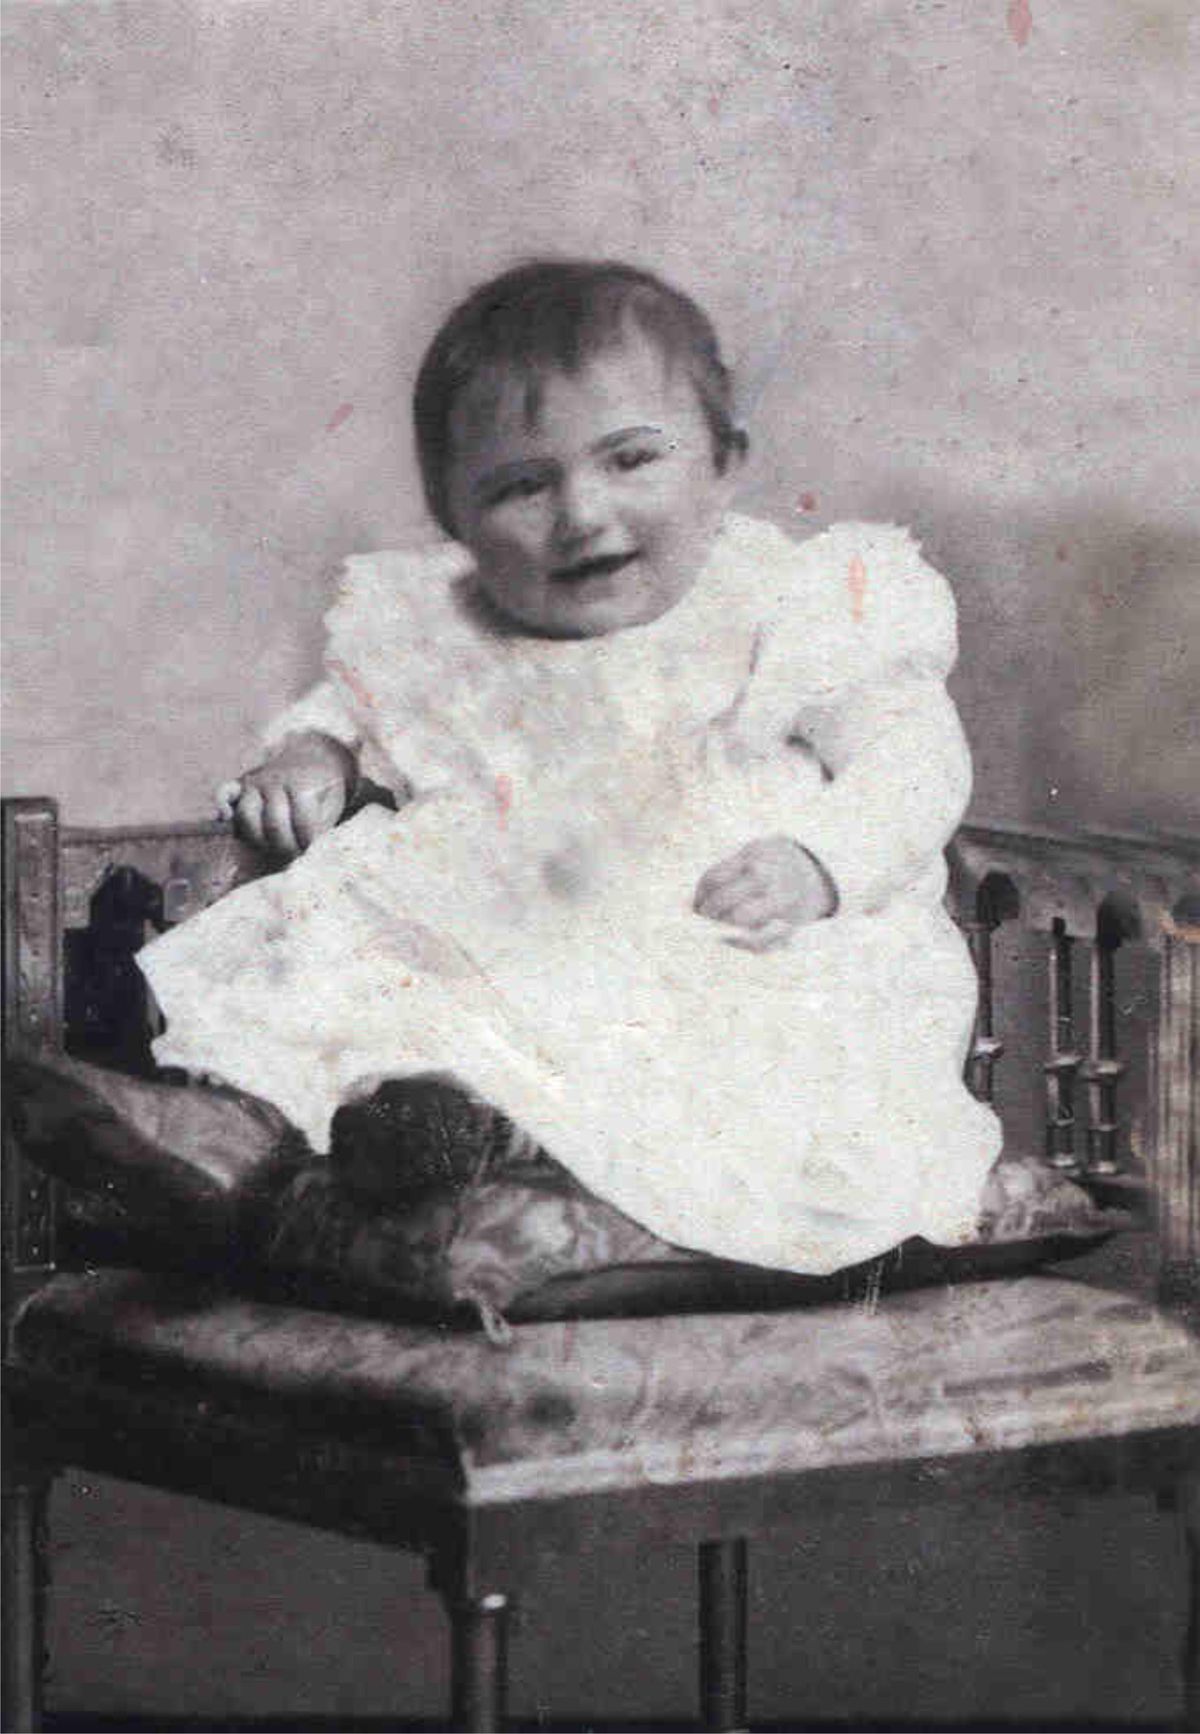 Louise Burkle Schaaf as a baby in Dietlingen, Germany.